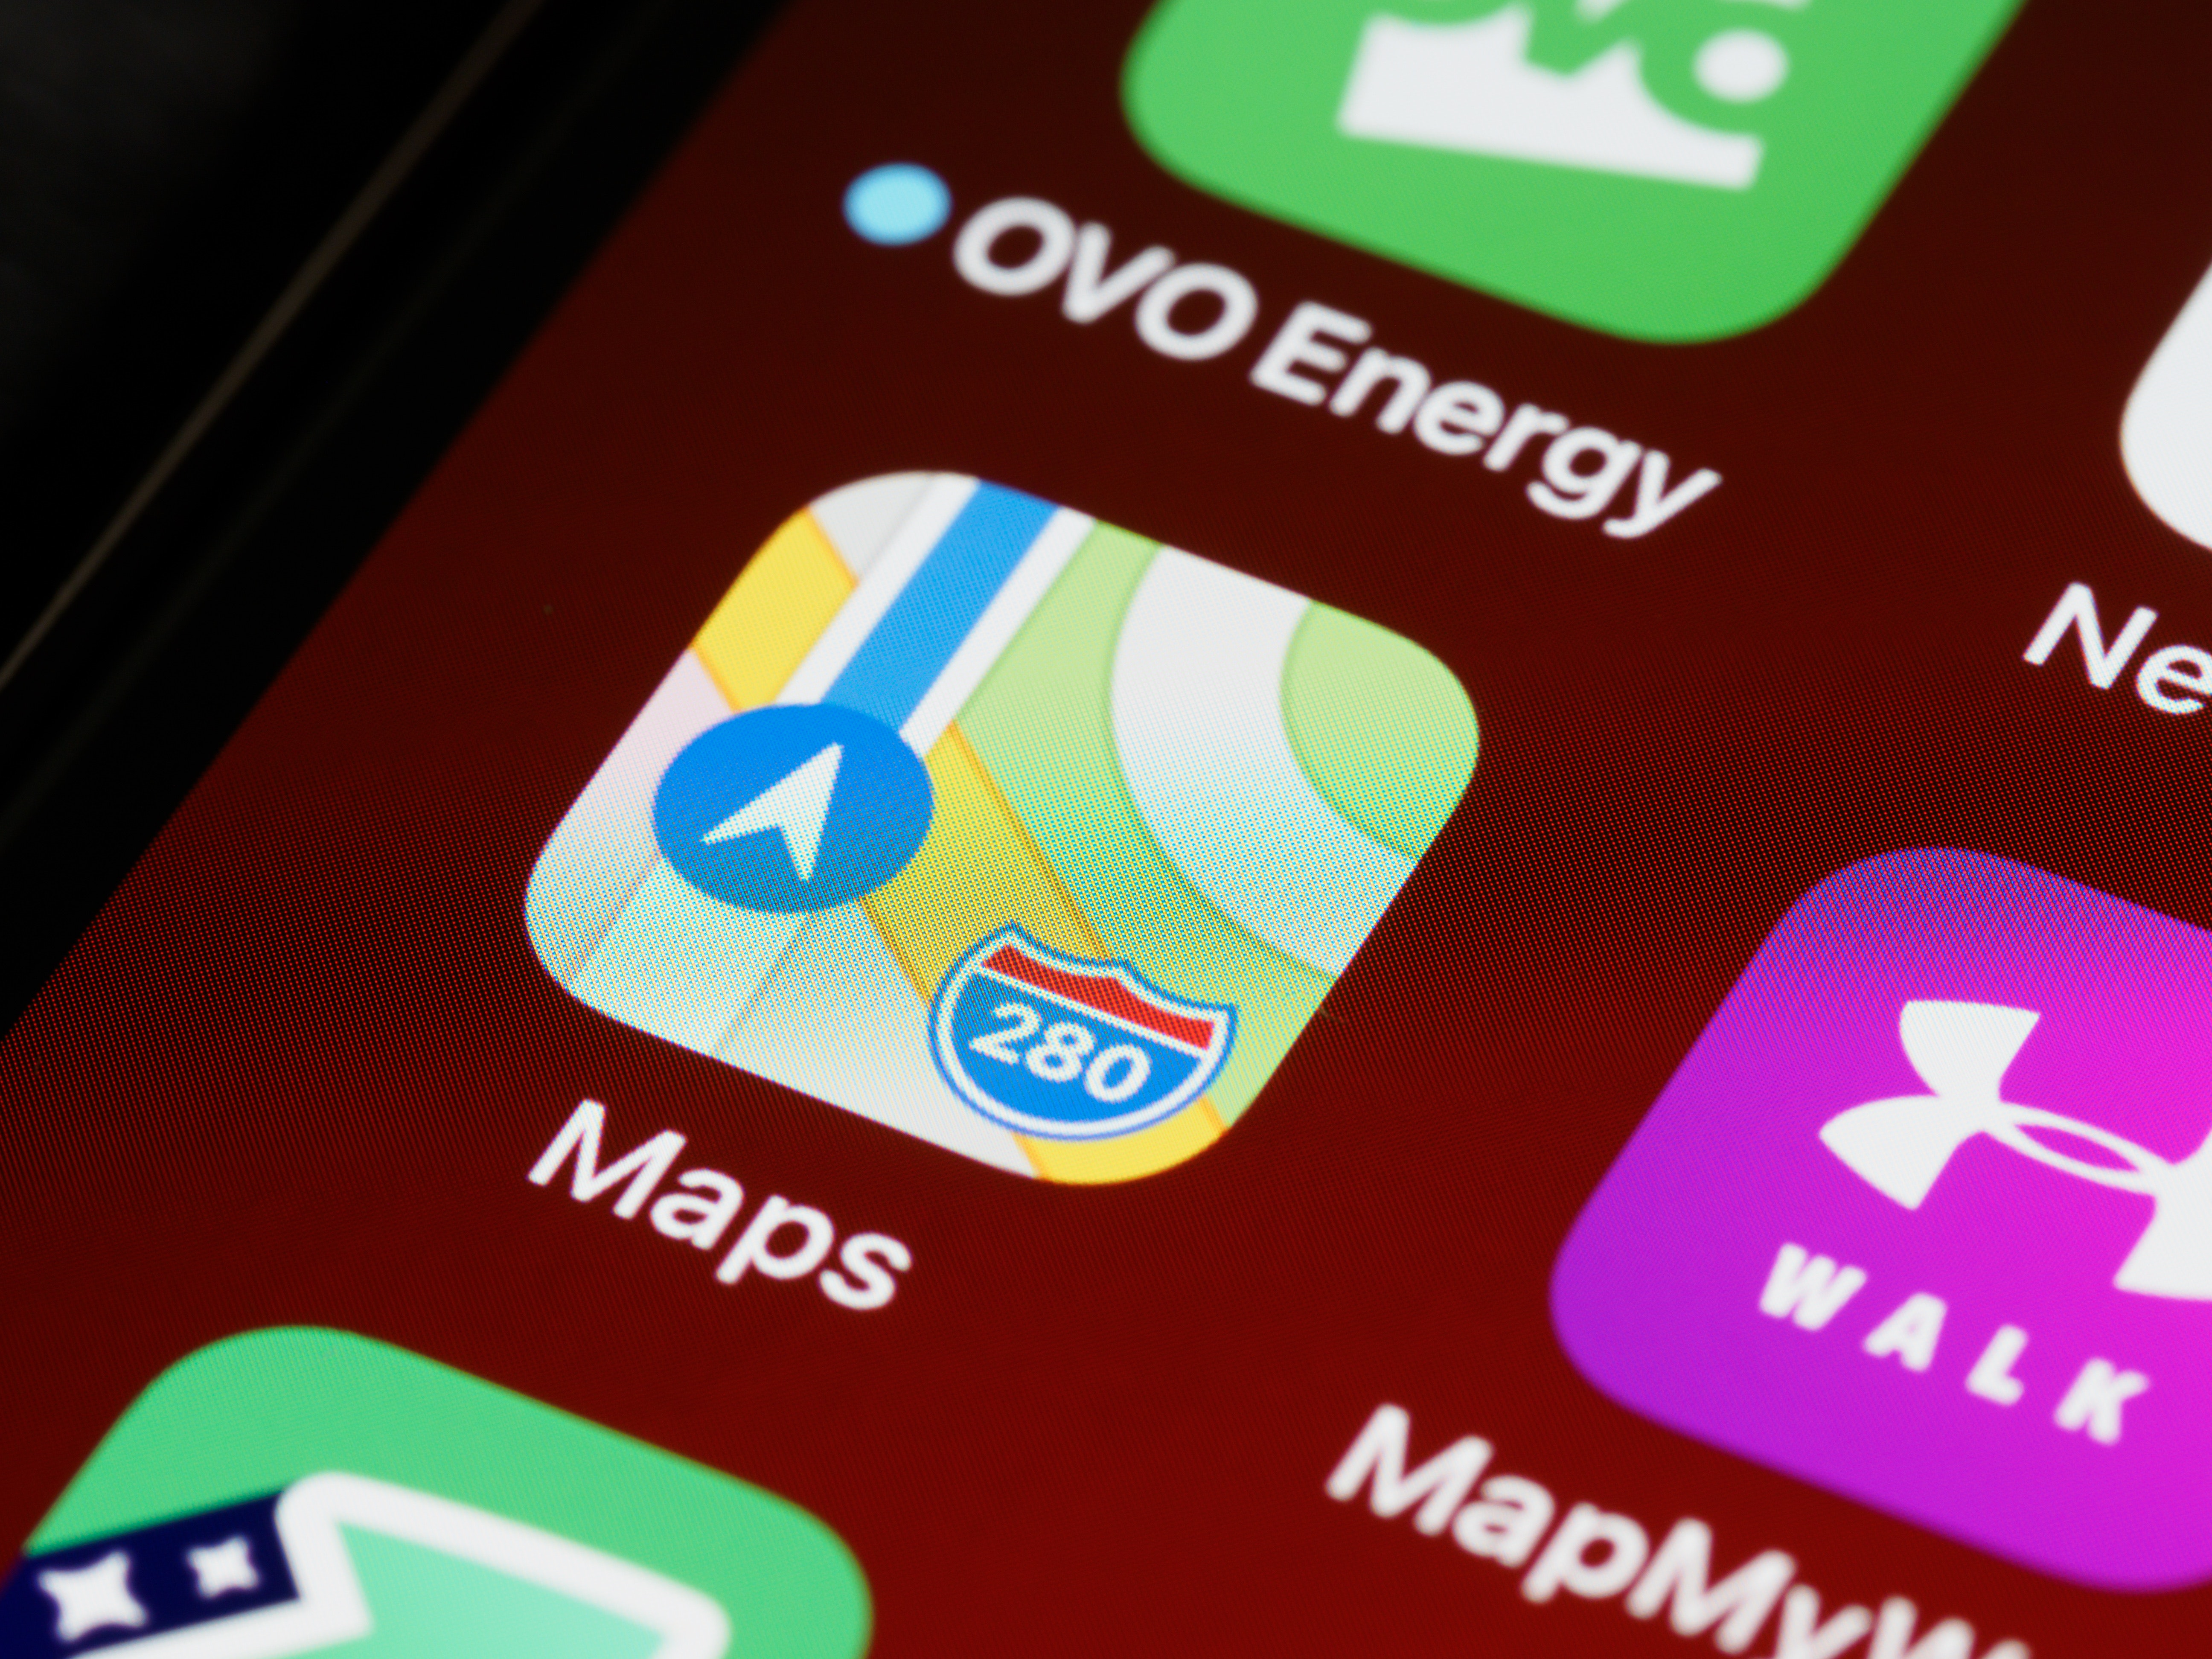 Çfarë fshihet pas logos së aplikacionit Maps të iPhone